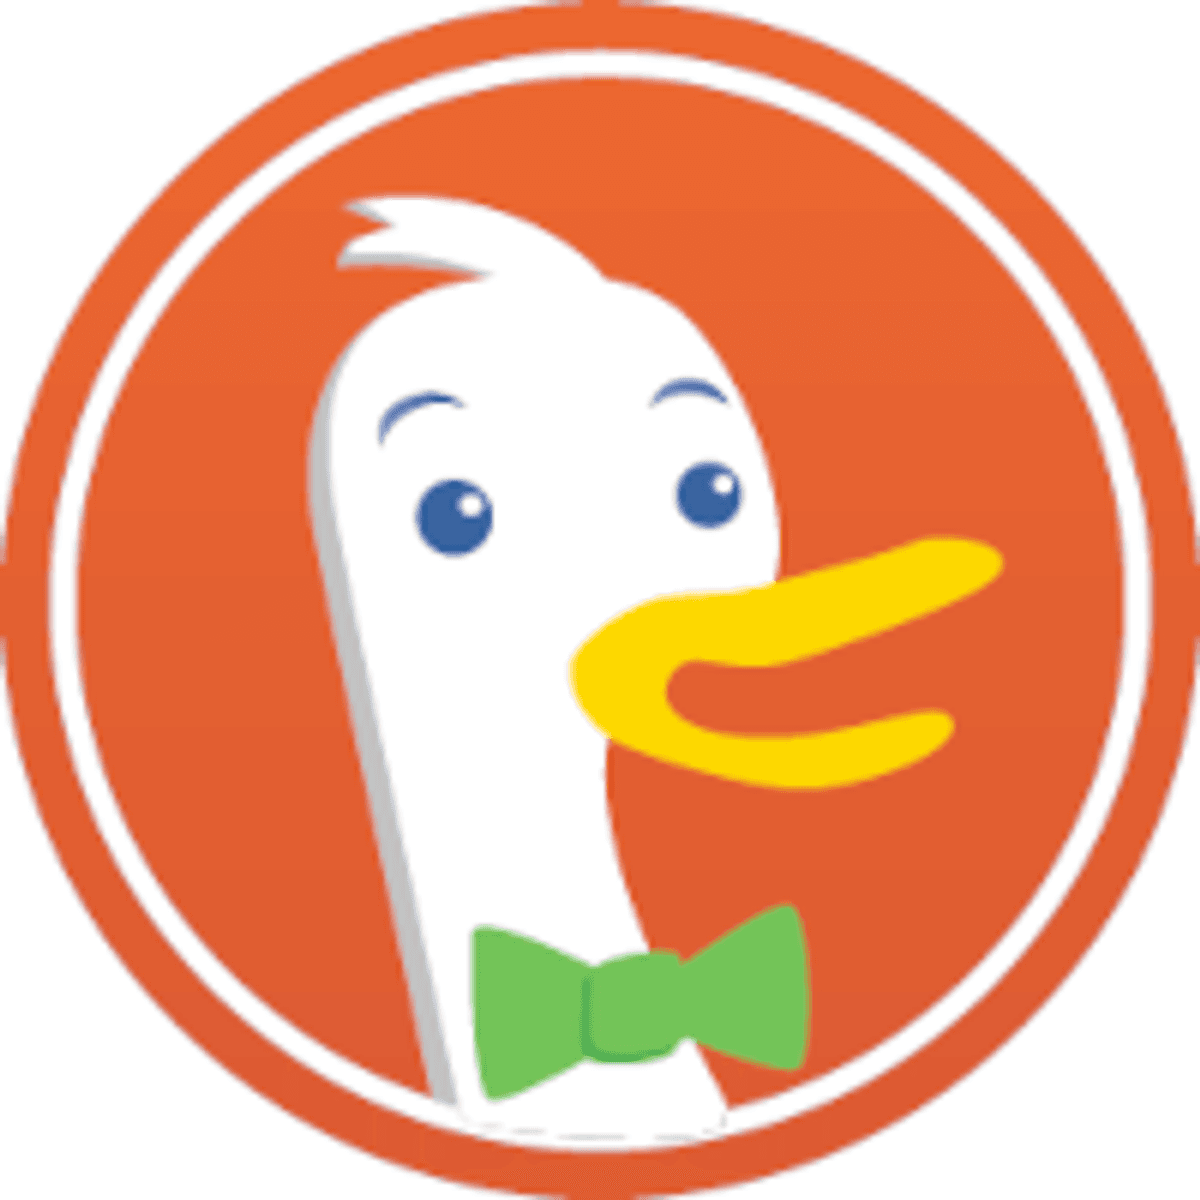 DuckDuckGo zoekmachine introduceert AI-gebaseerde chatfunctie image